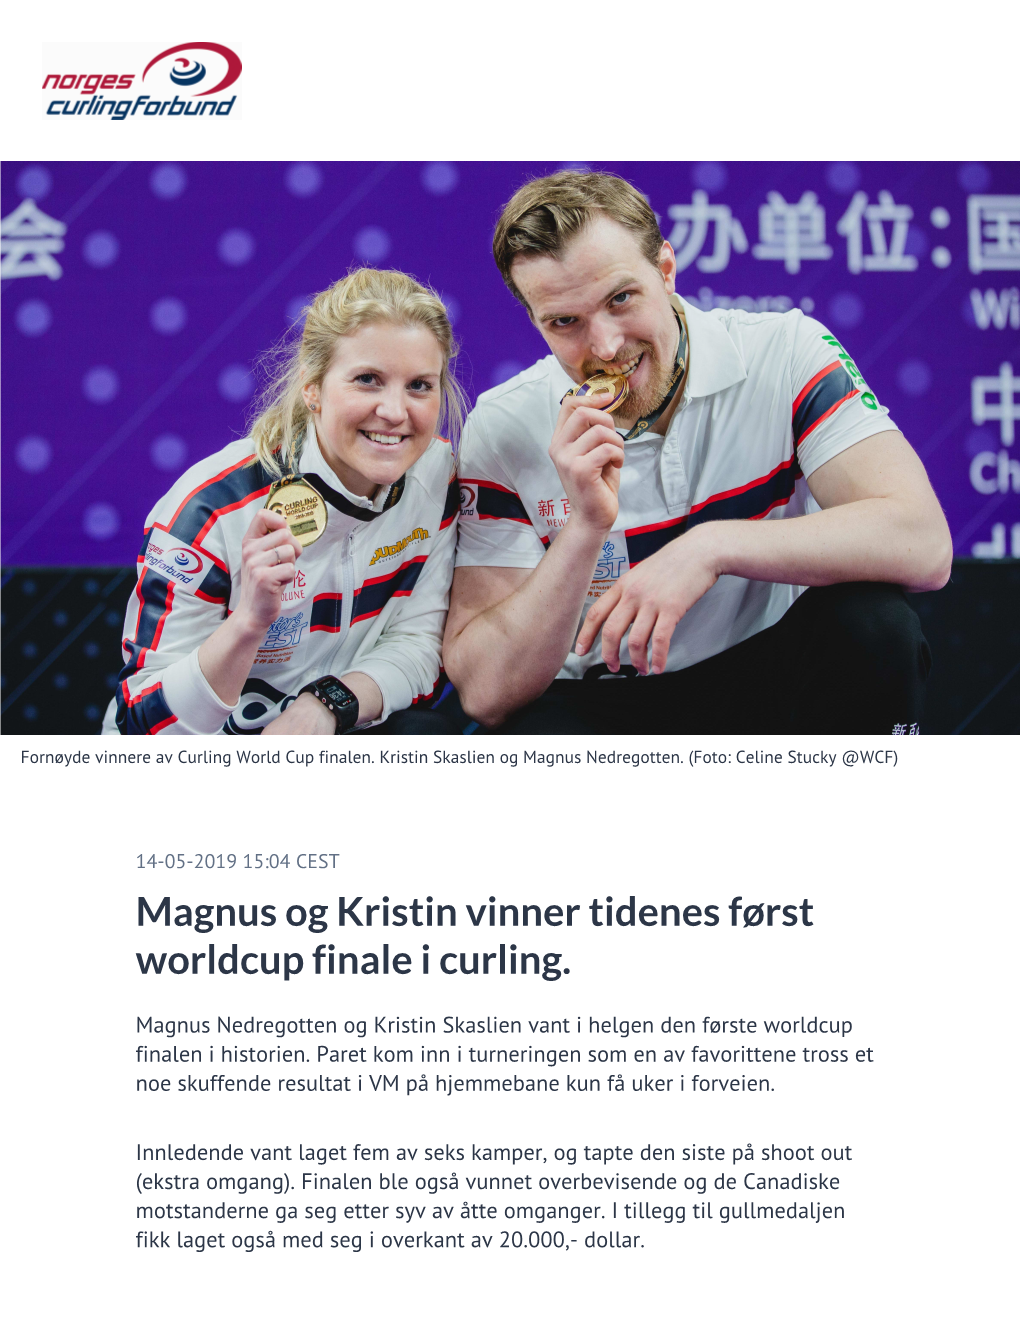 Magnus Og Kristin Vinner Tidenes Først Worldcup Finale I Curling